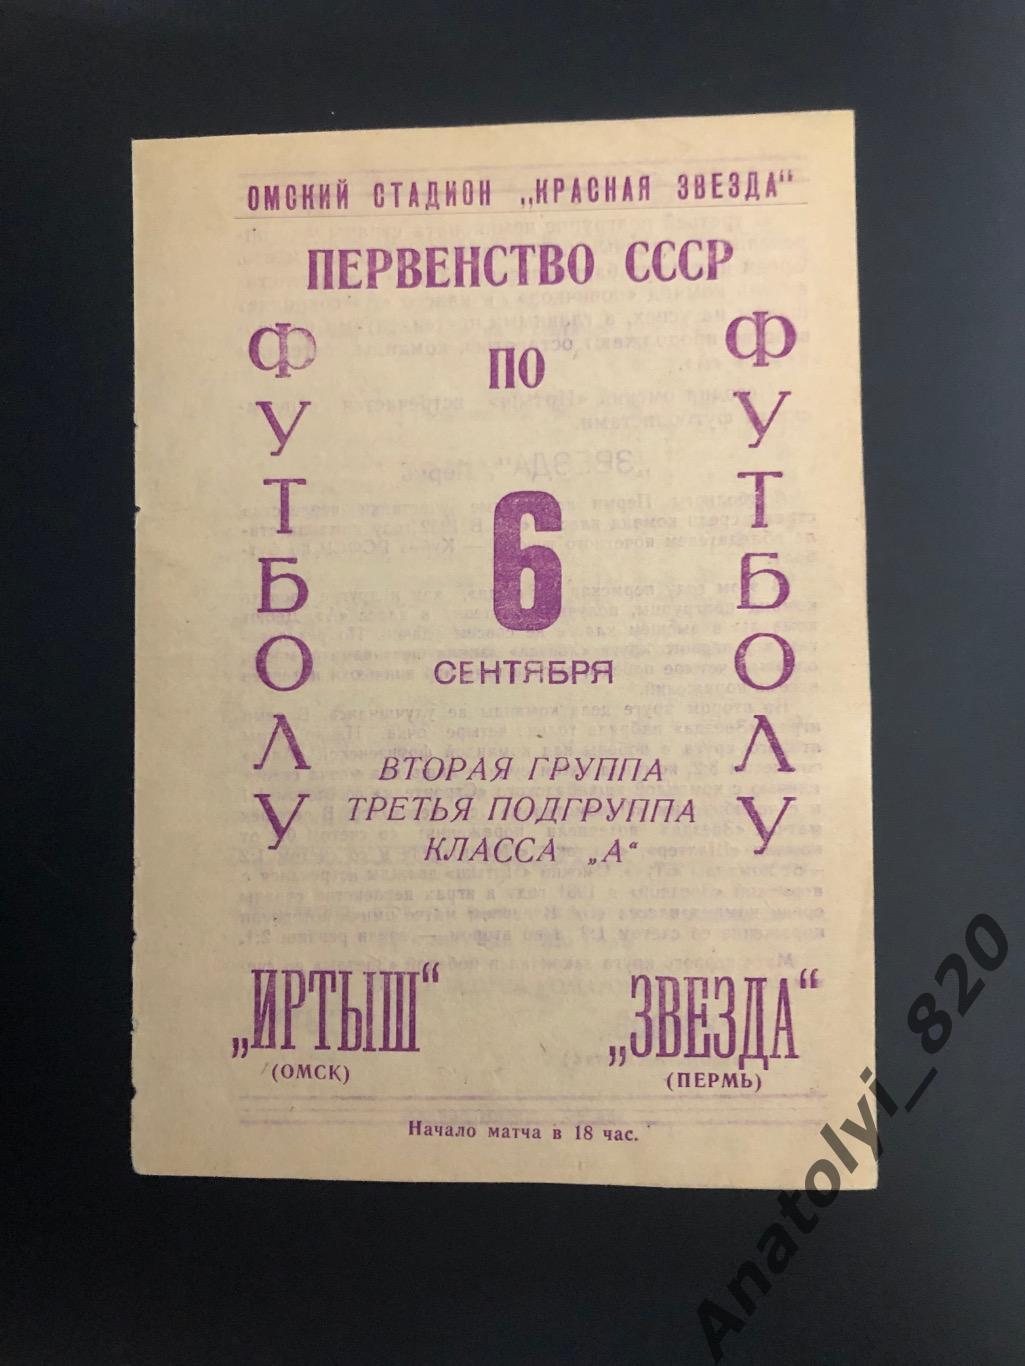 Иртыш Омск - Звезда Пермь 1966 год